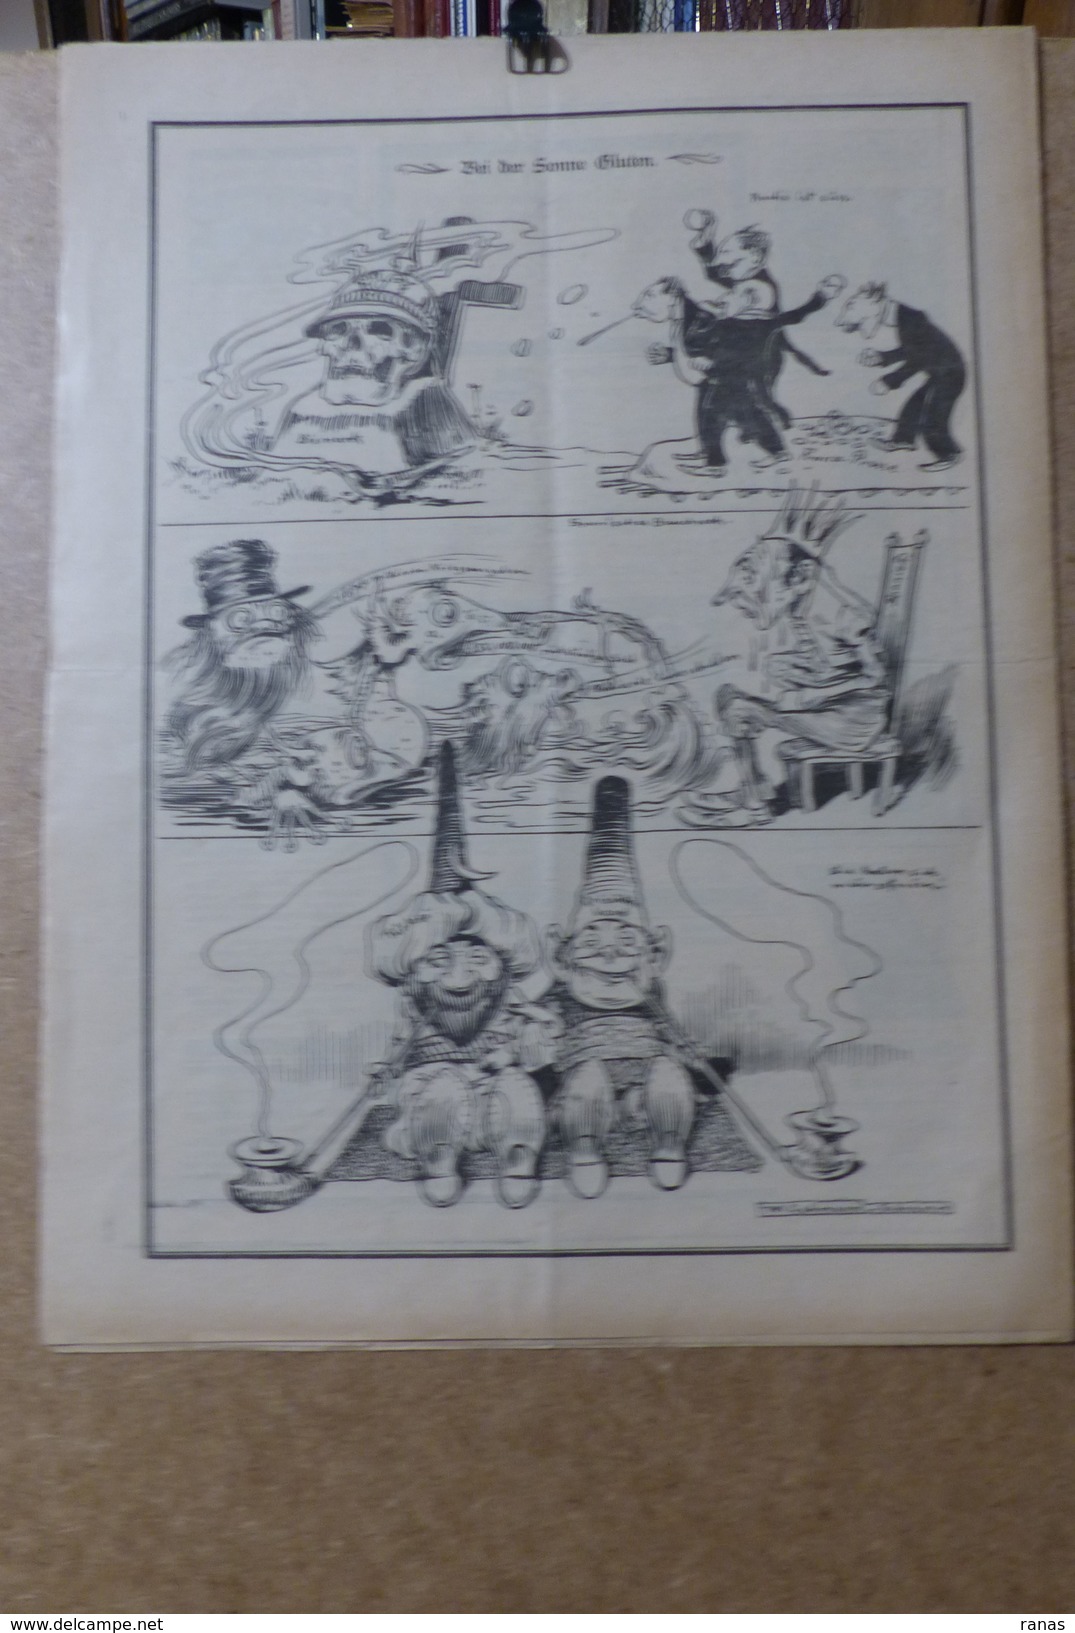 Revue Journal NEBELSPALTER Satirique 36 X 27,5 Germany Allemagne Bismarck N° 35 De 1898 Pot De Chambre Turquie Opium - 1850 - 1899